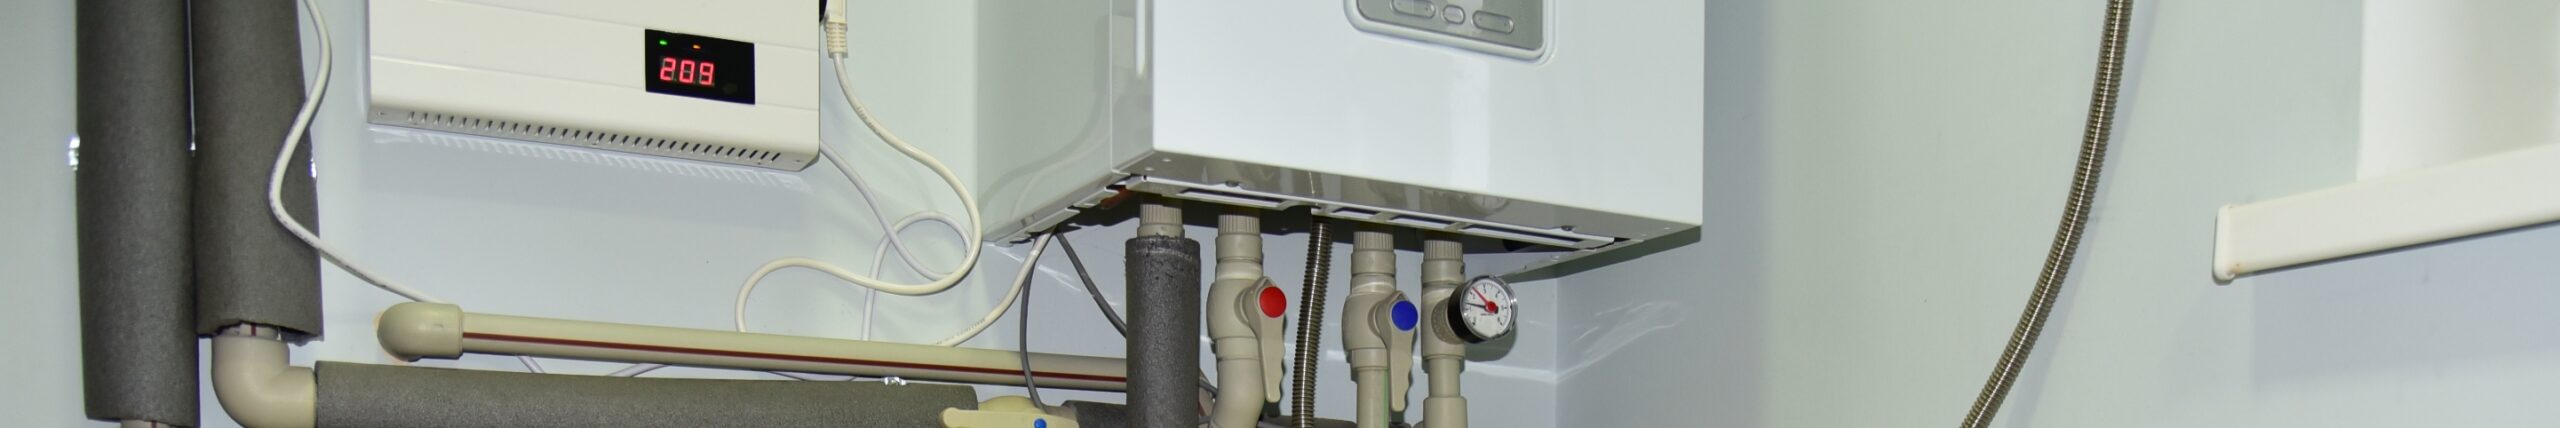 Heating Equipment Seasonal Checkup Header Image